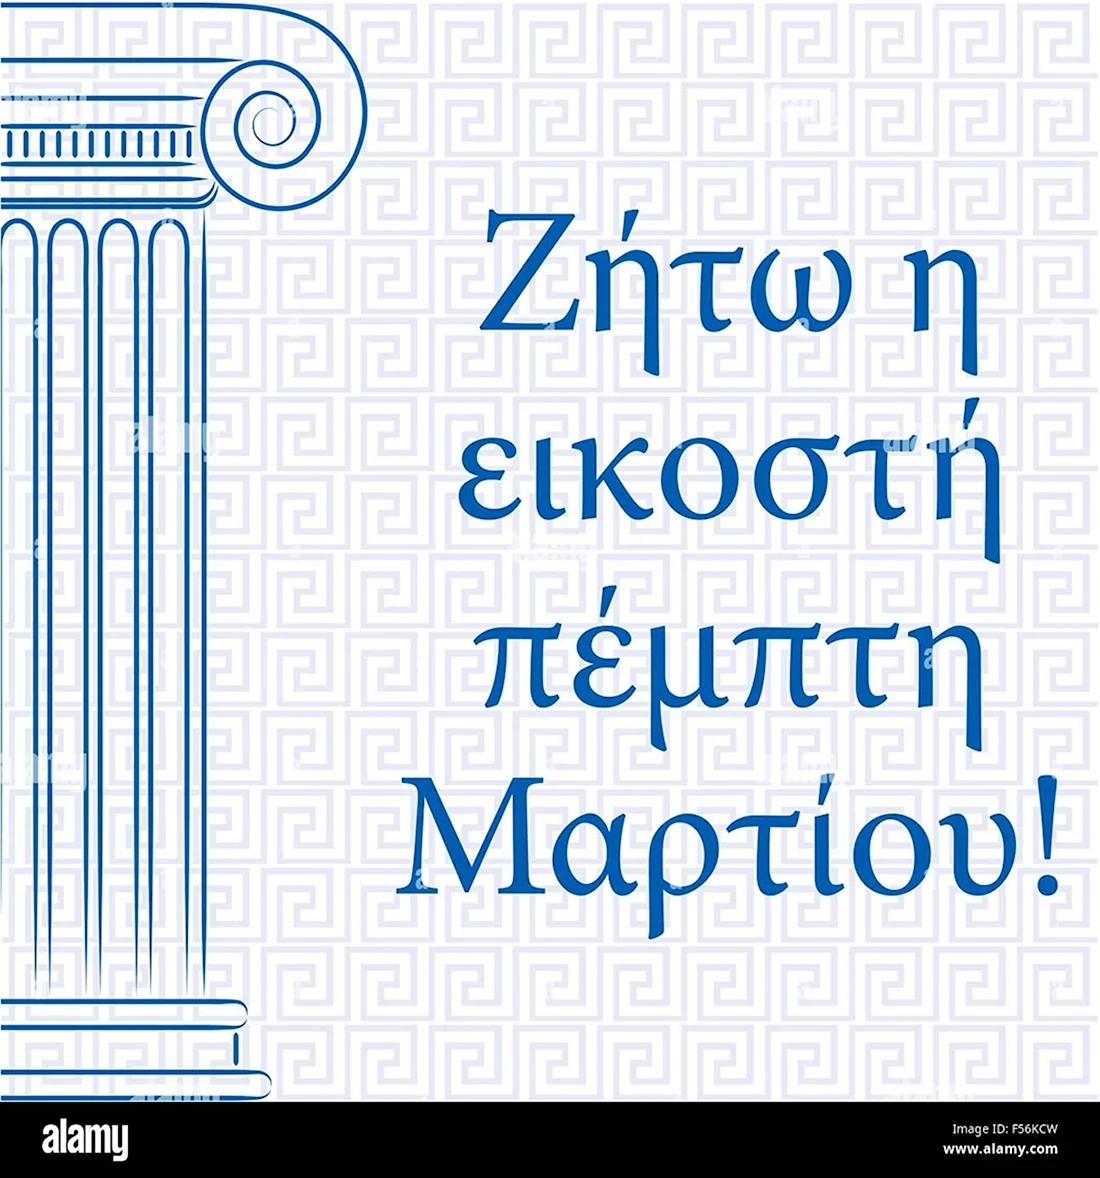 День независимости Греции открытки. Поздравление на праздник